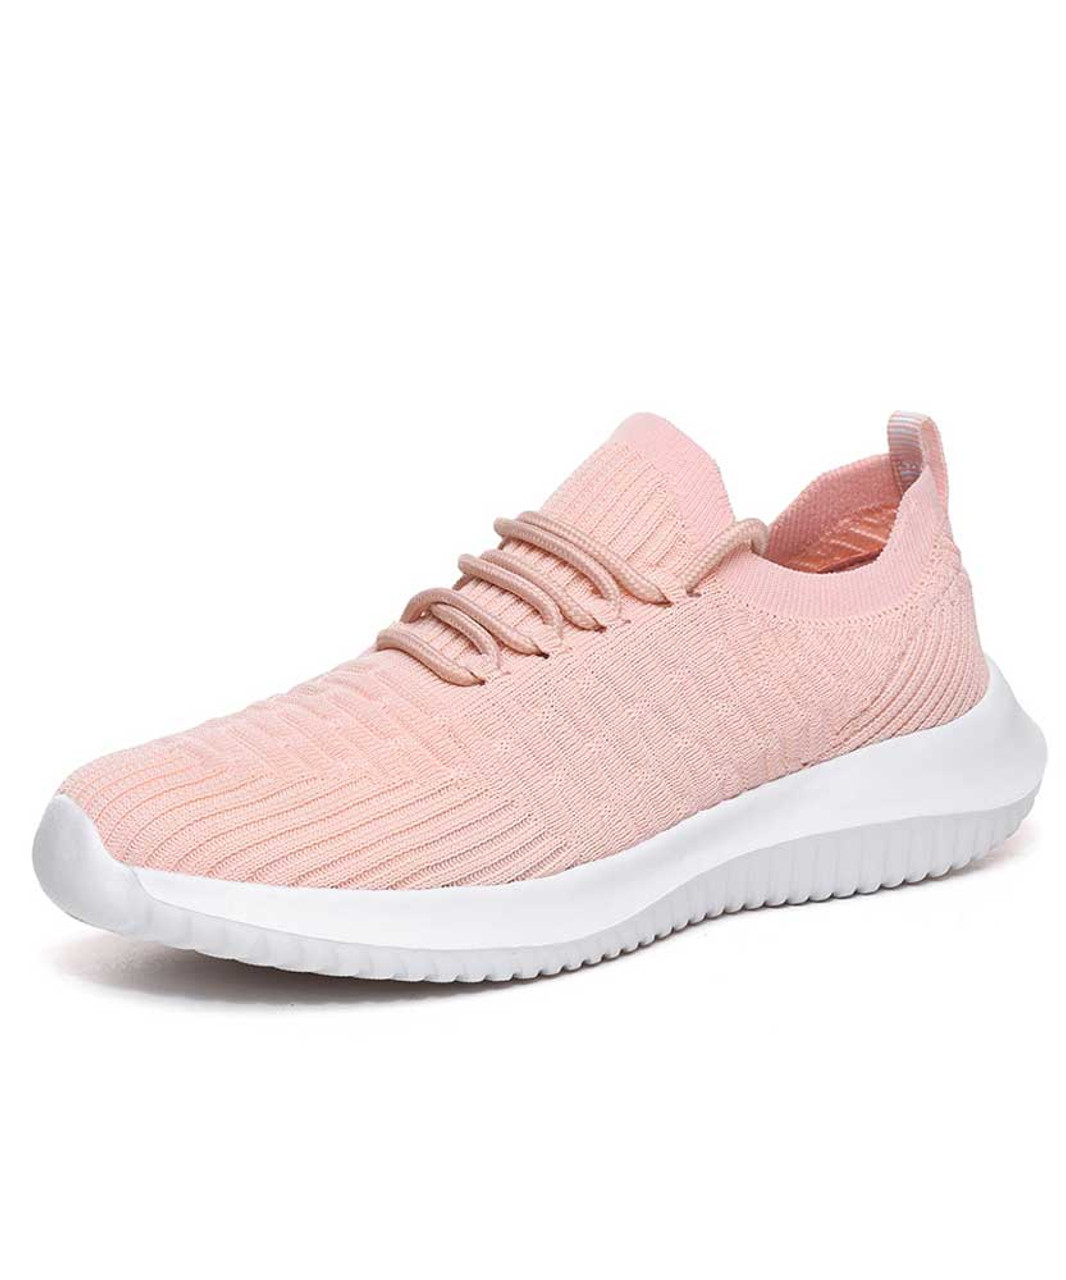 Pink flyknit stripe texture sock like entry shoe sneaker | Womens shoe ...